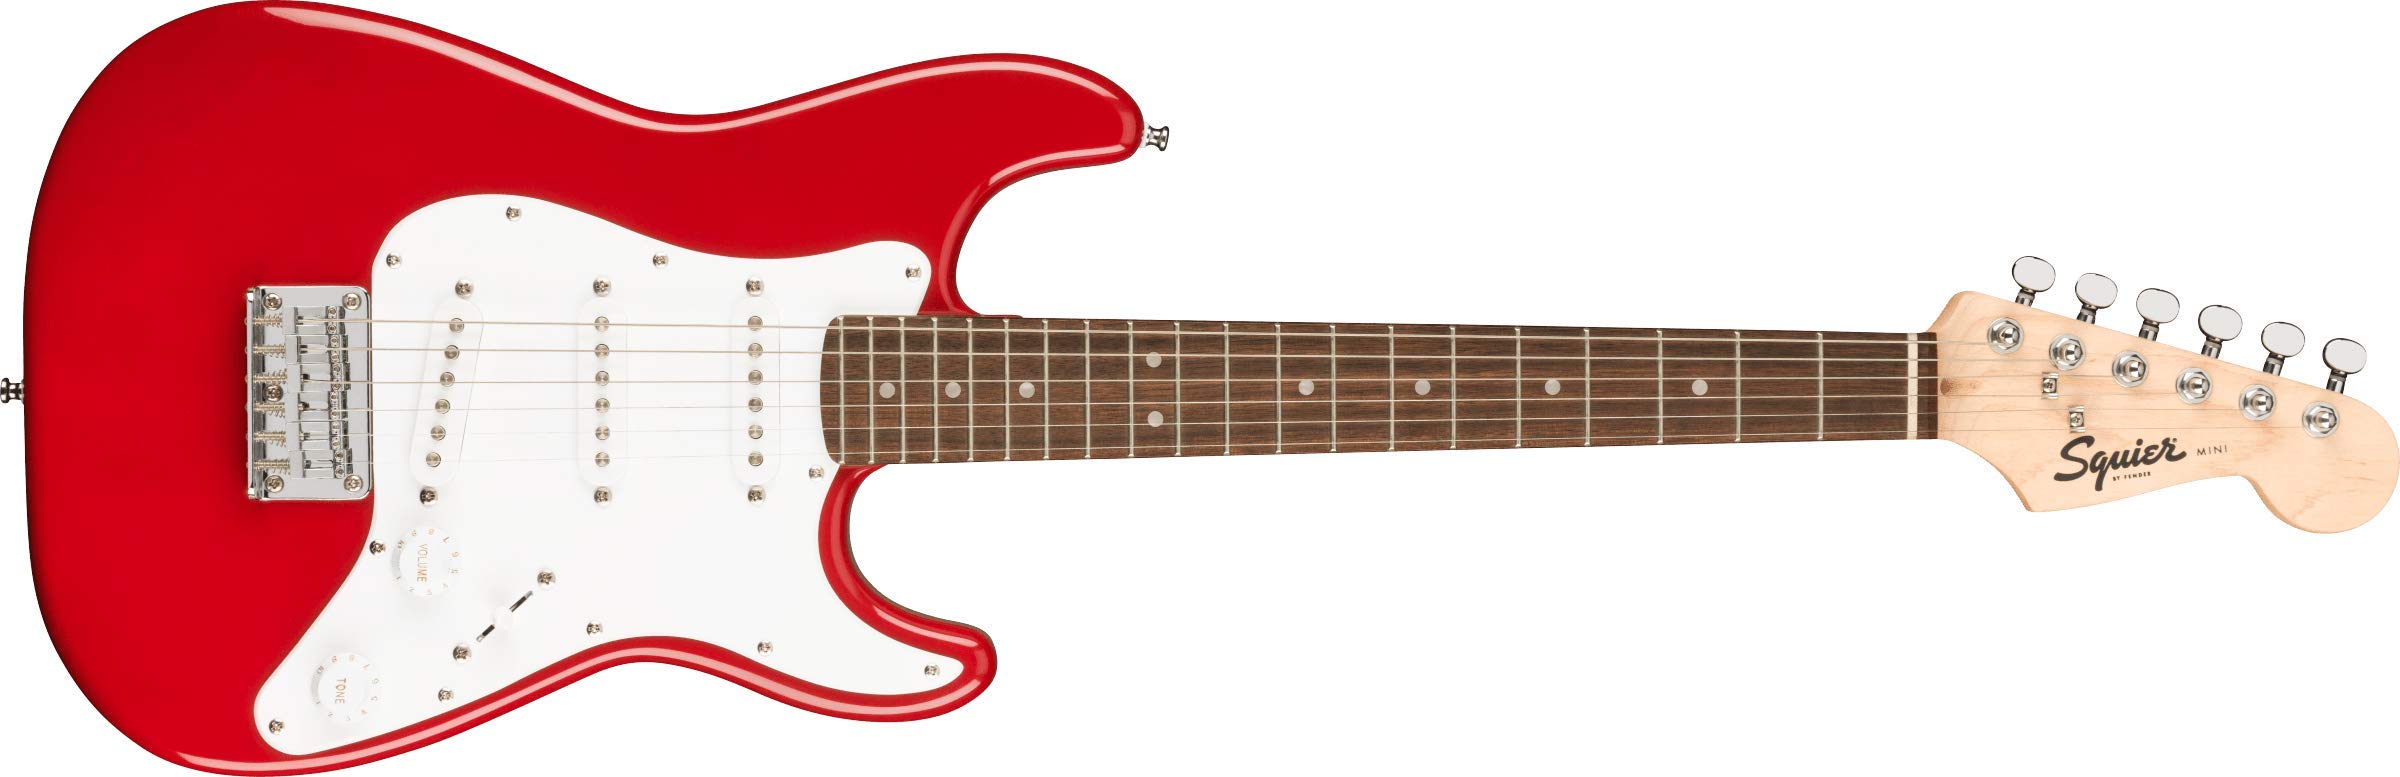 Squier मिनी स्ट्रैट इलेक्ट्रिक गिटार- लॉरेल फ़िंगरबोर्ड के साथ डकोटा रेड